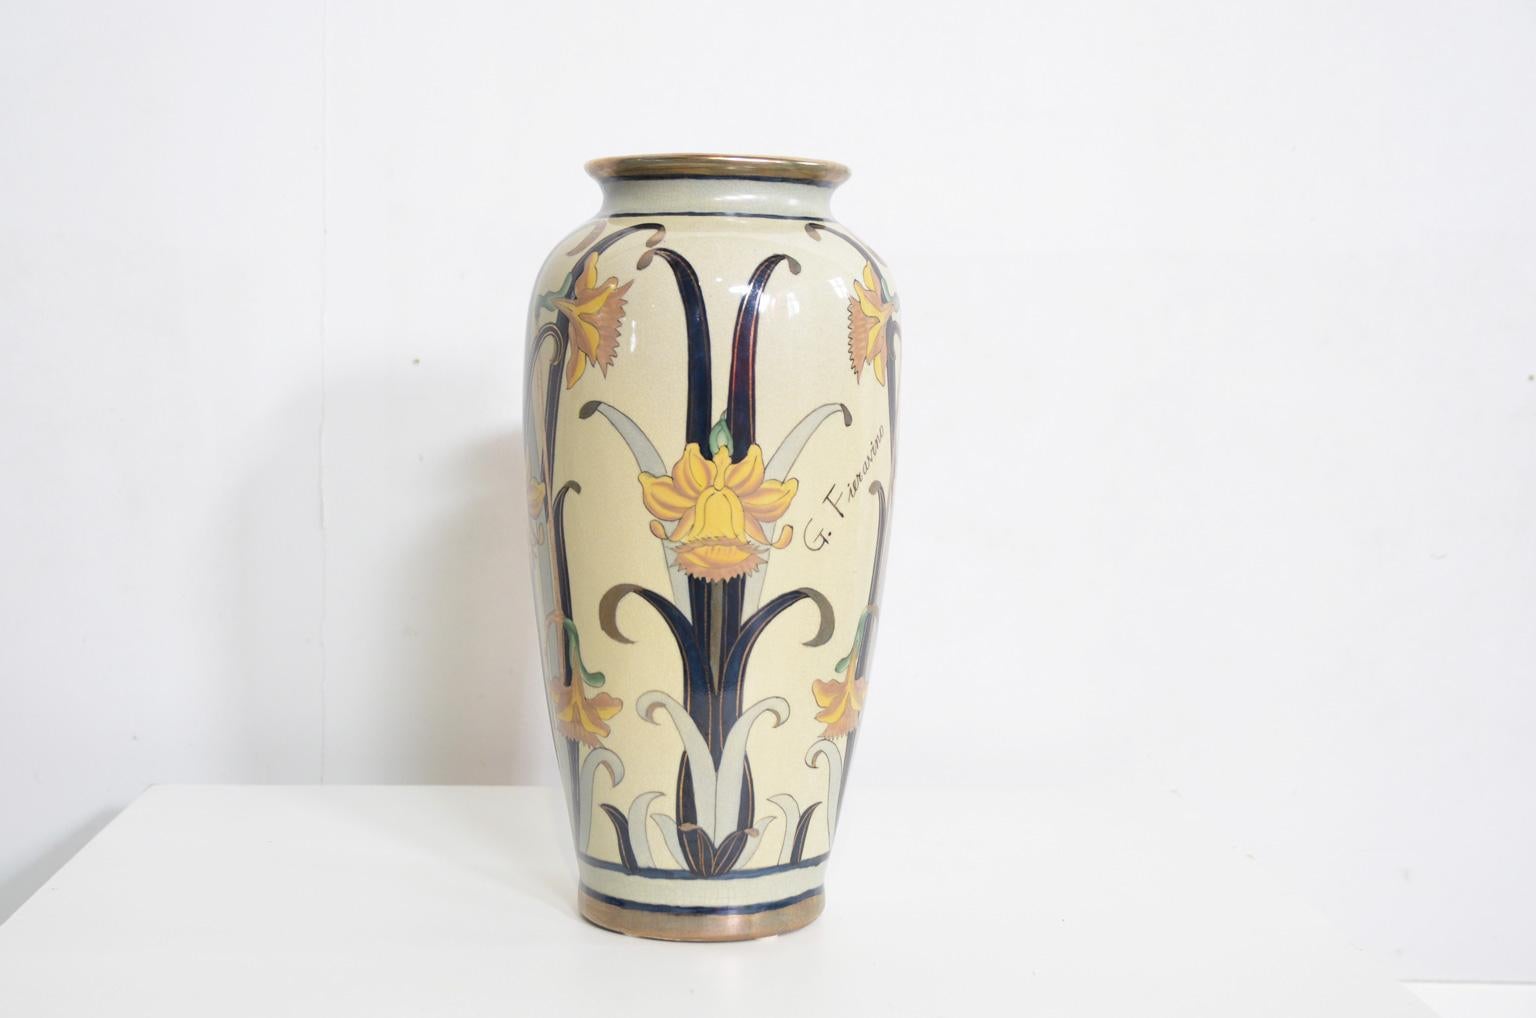 3 Italian Earthenware Art Nouveau Vases by G. Fieravino 1